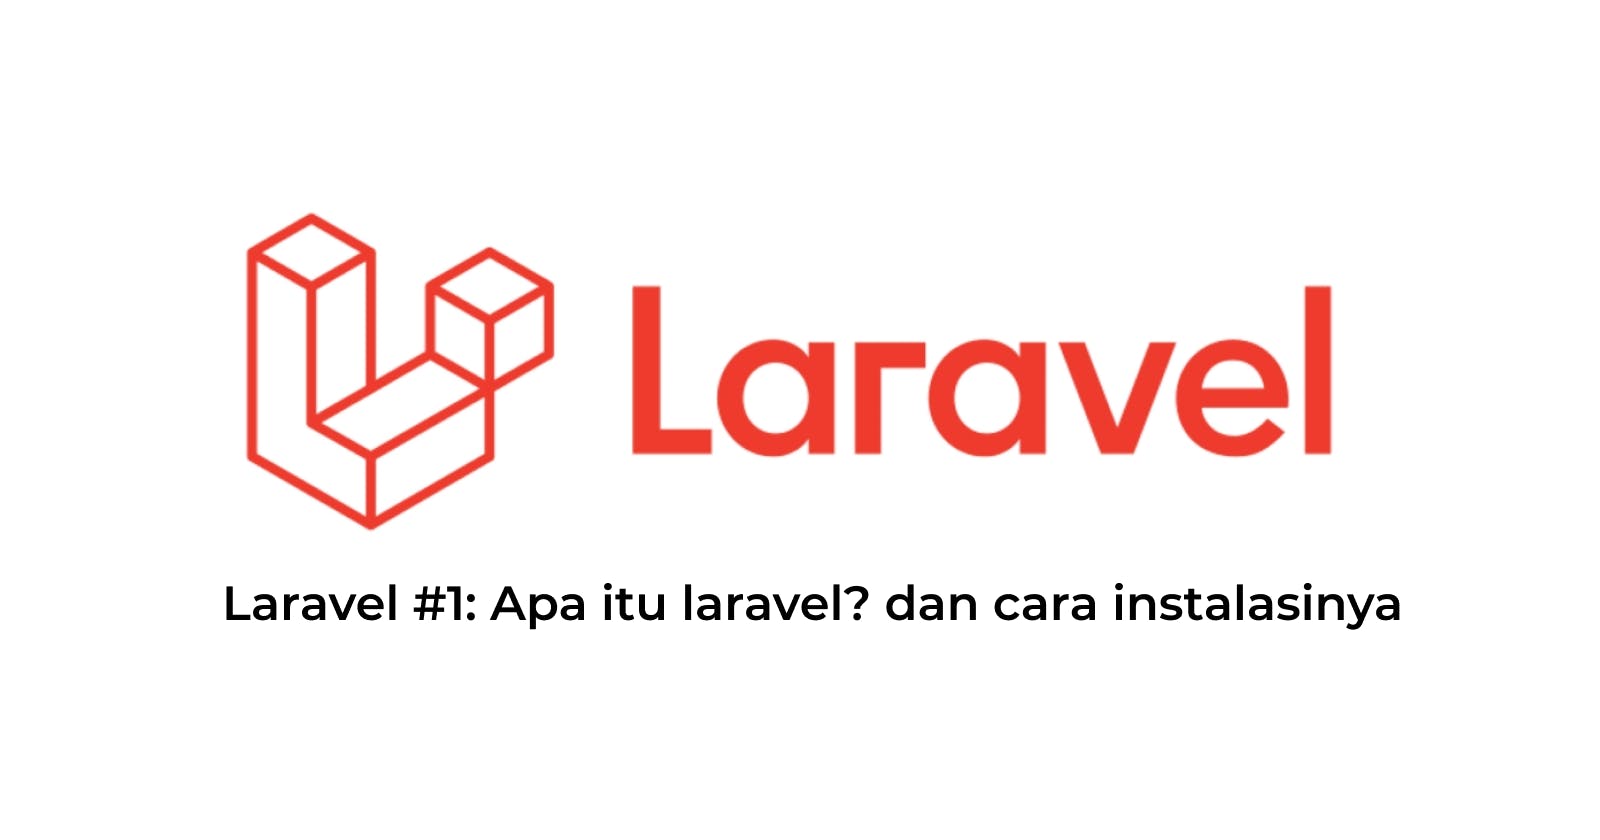 Laravel #1: Apa itu laravel? dan cara instalasinya